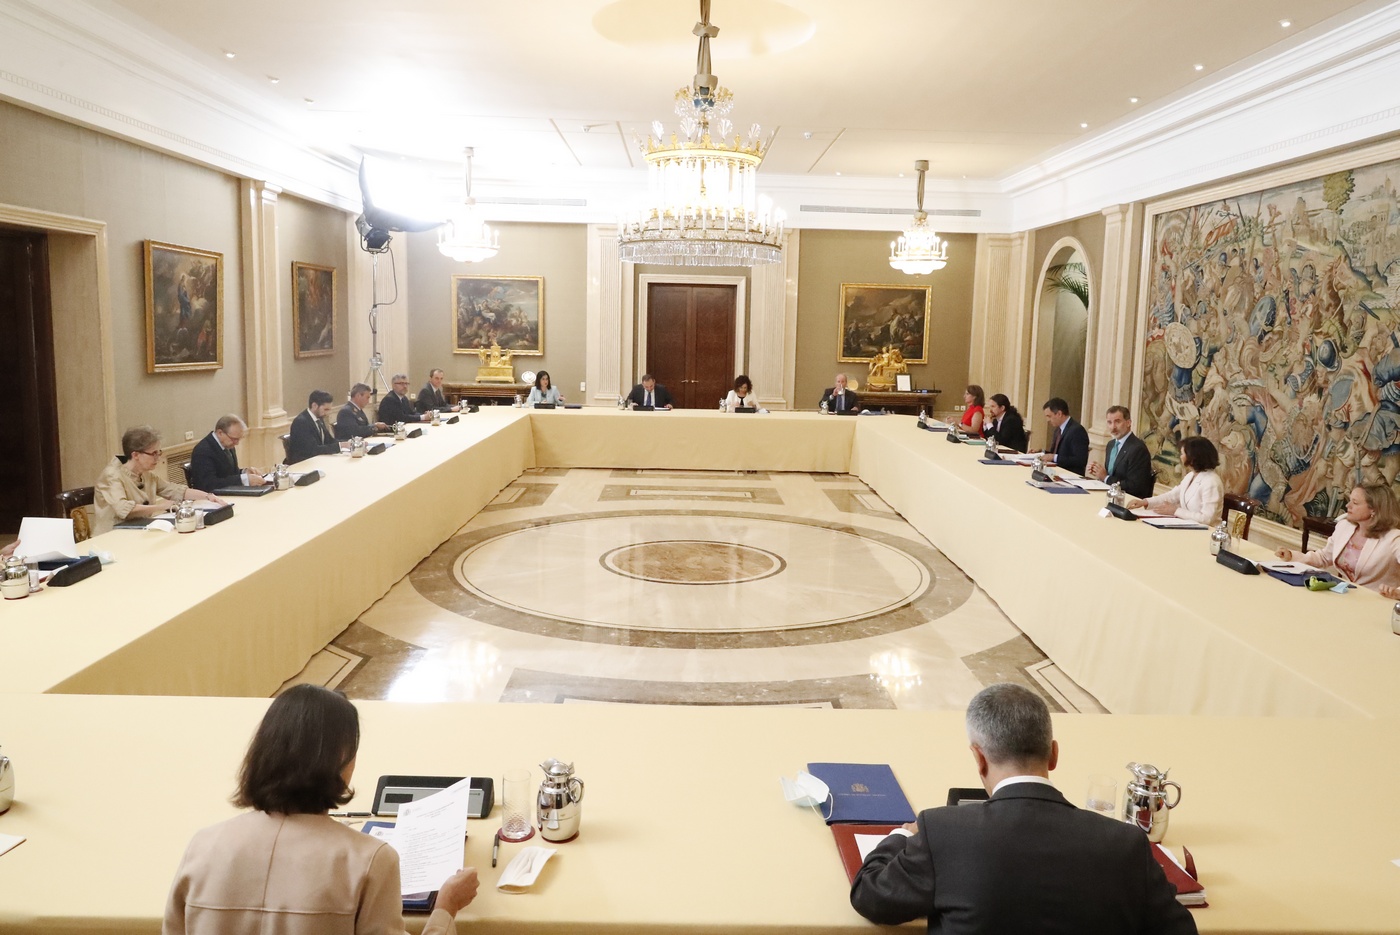 Consejo de Seguridad Nacional. Palacio de la Zarzuela. Preside S.M. El Rey D. Felipe VI. 22 de junio 2020